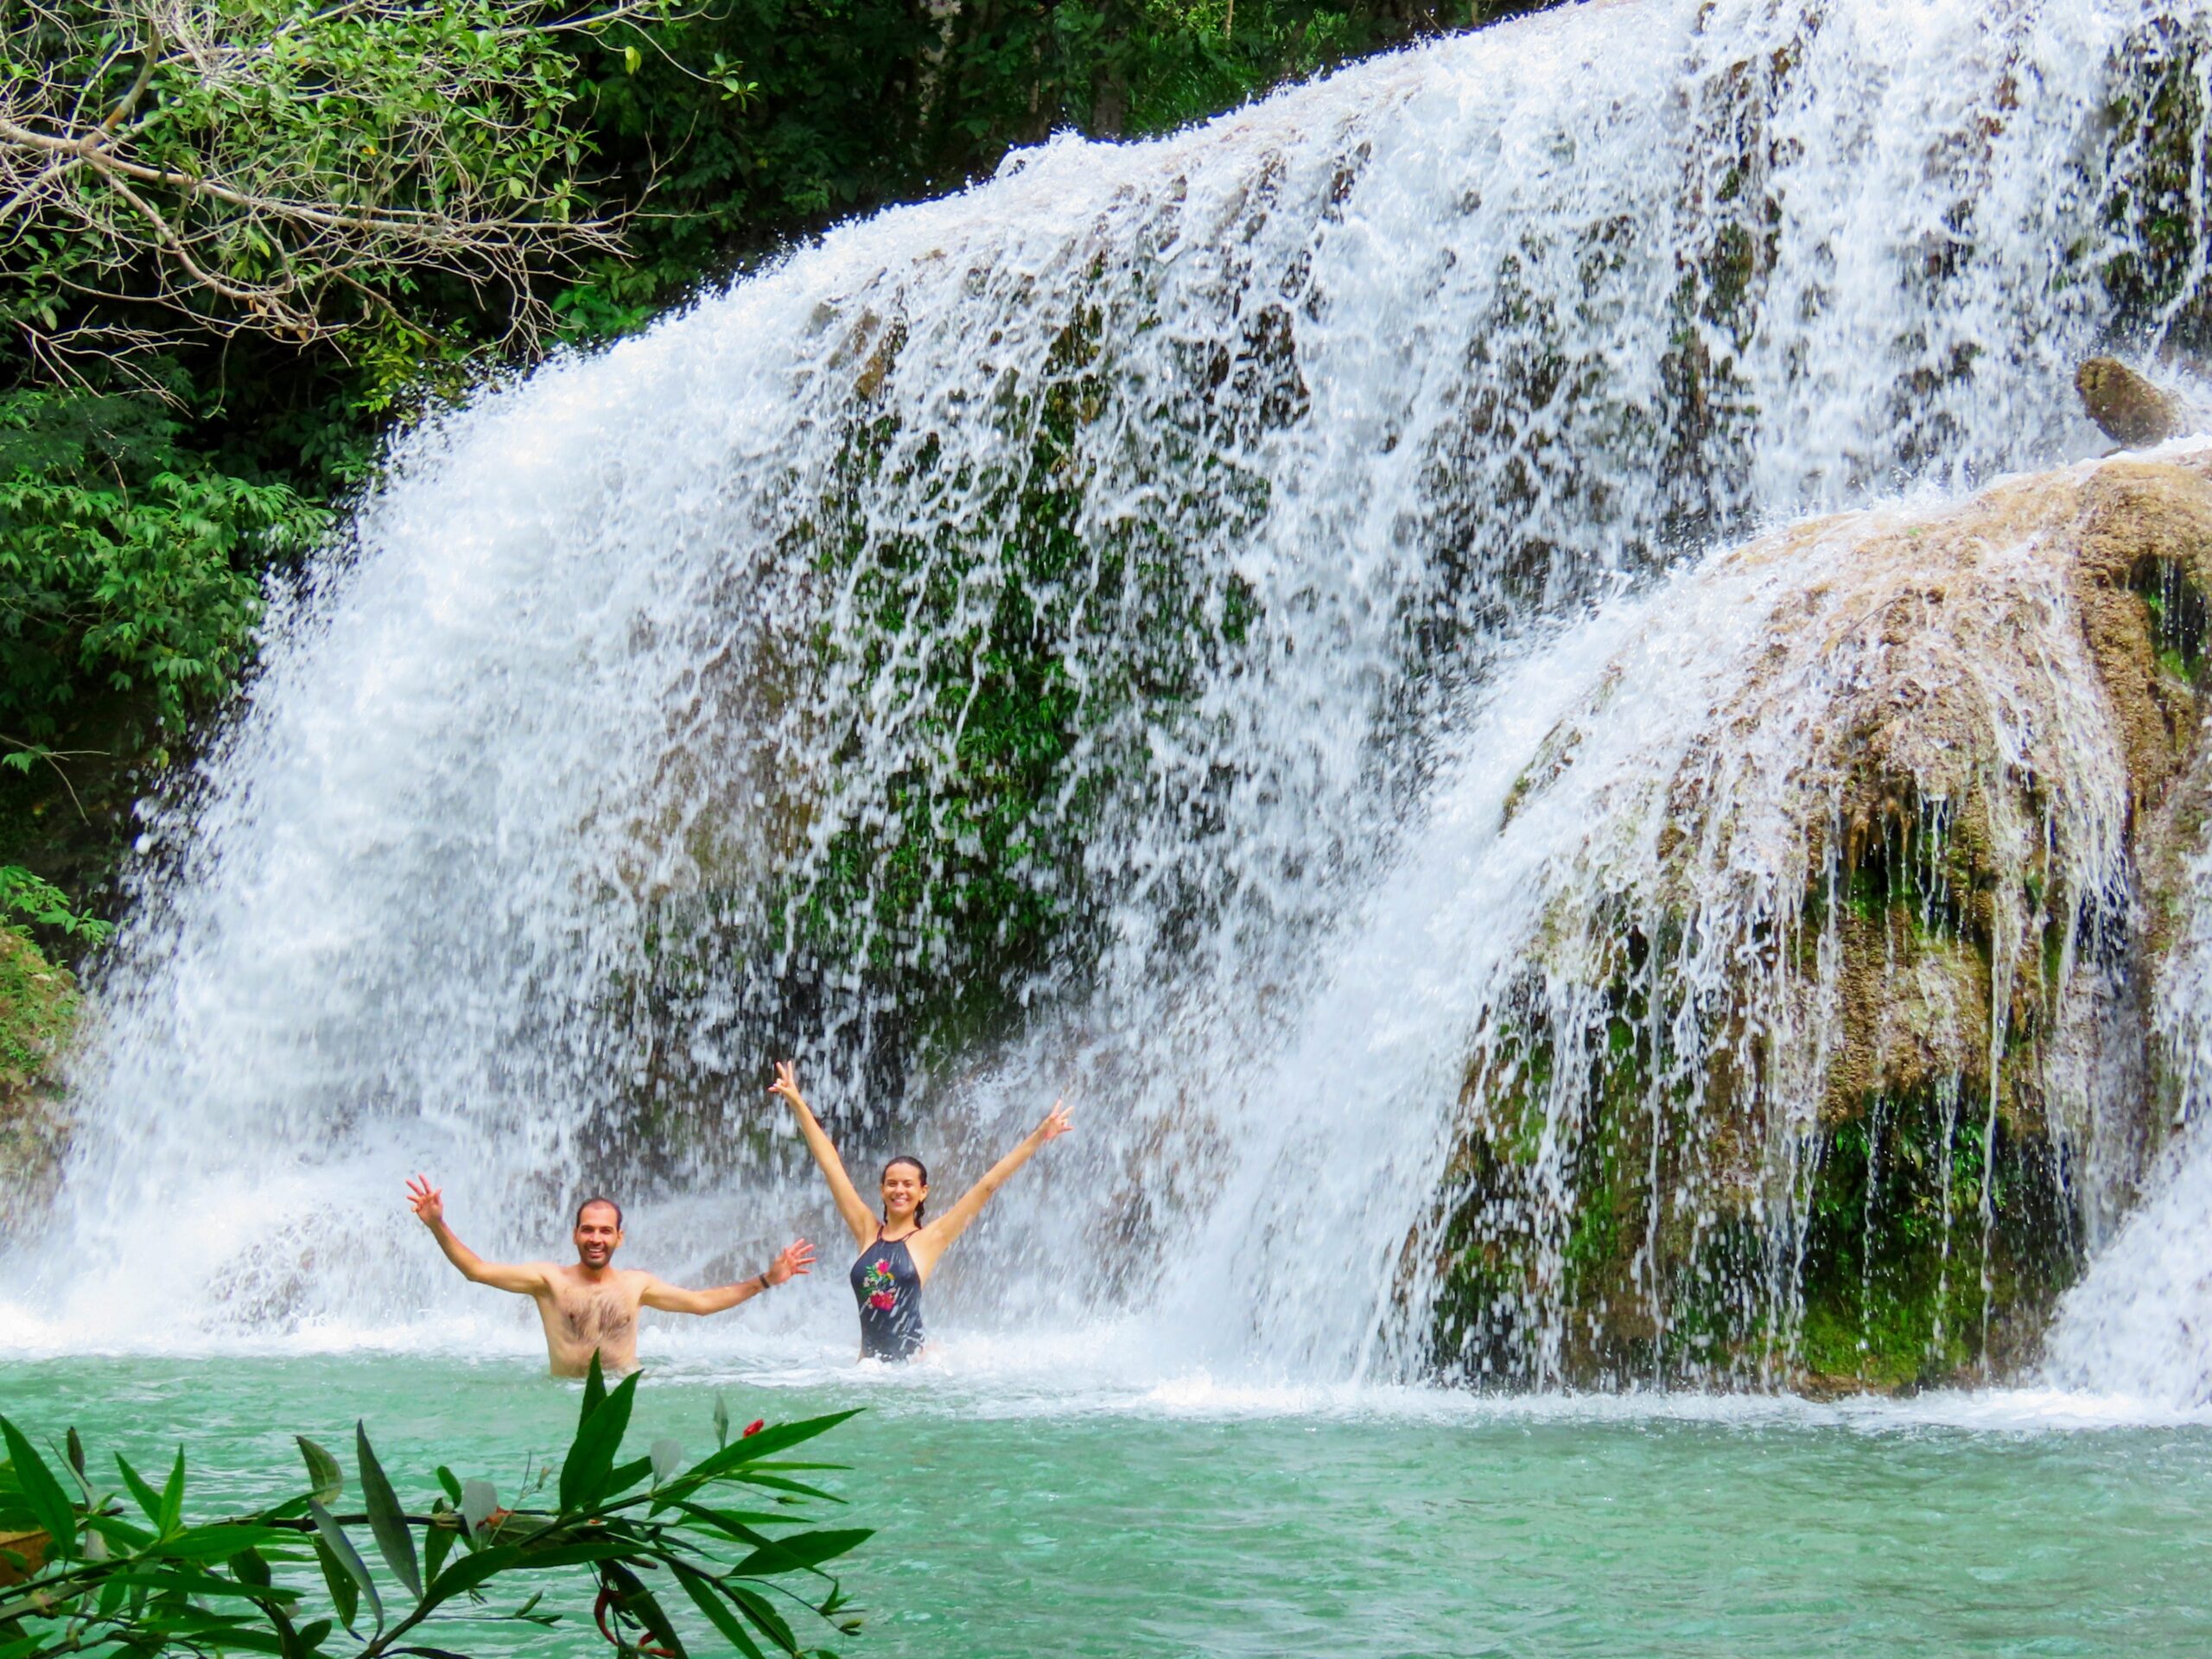 Pessoas se divertem nas cachoeiras de águas cristalinas na Estãncia Mimosa em Bonito MS